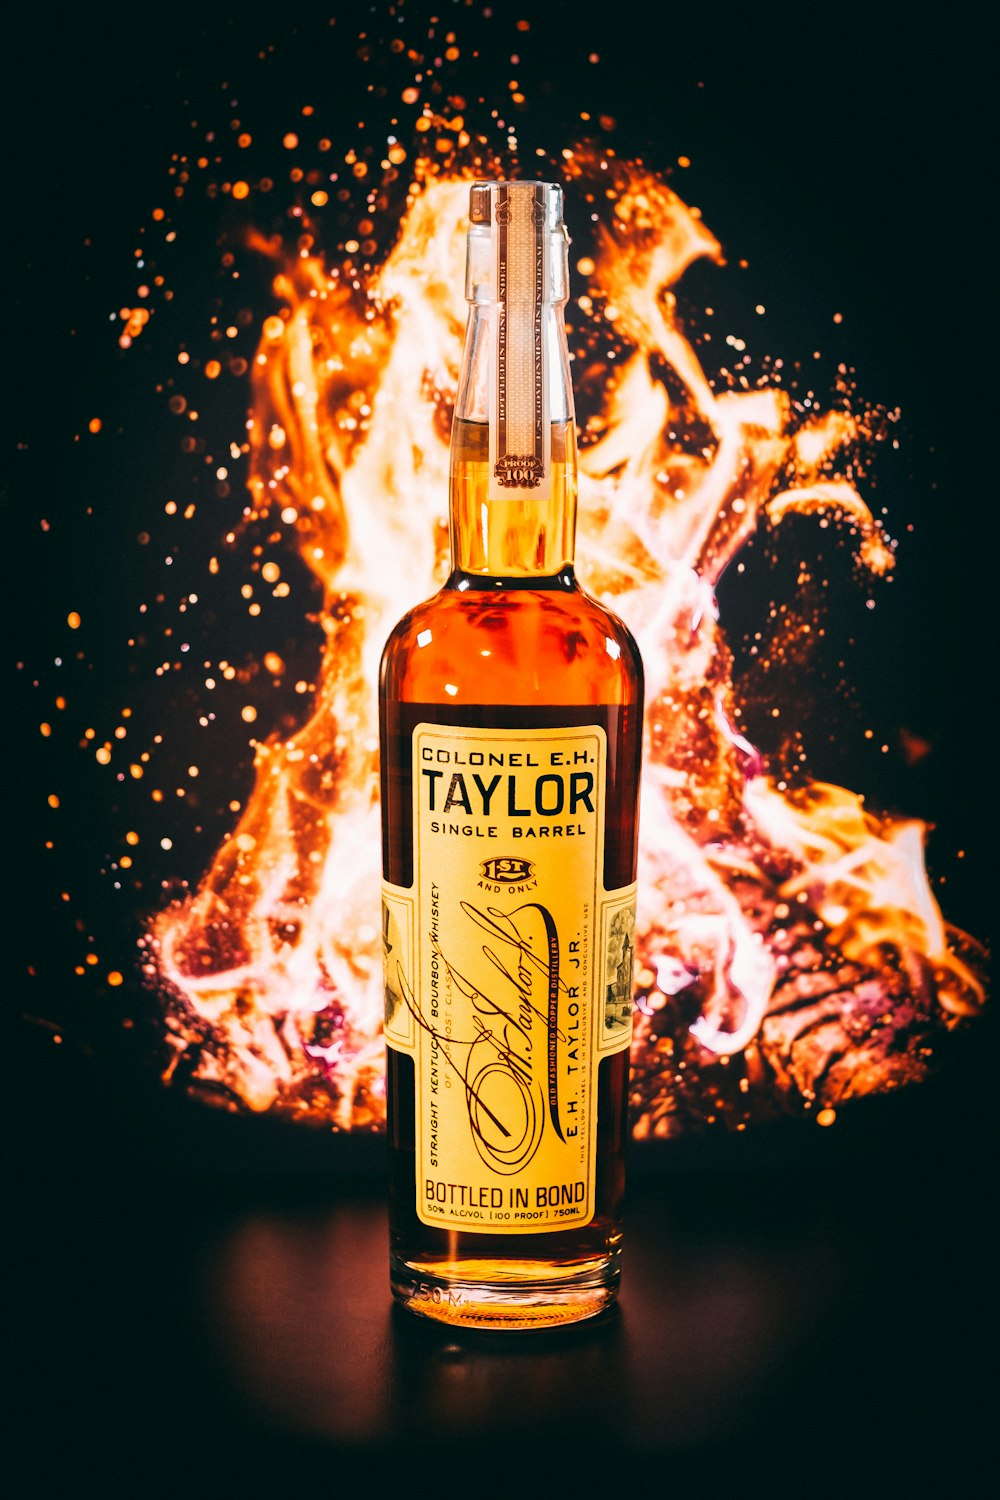 Une bouteille de Malk unique de Taylor assise devant un feu